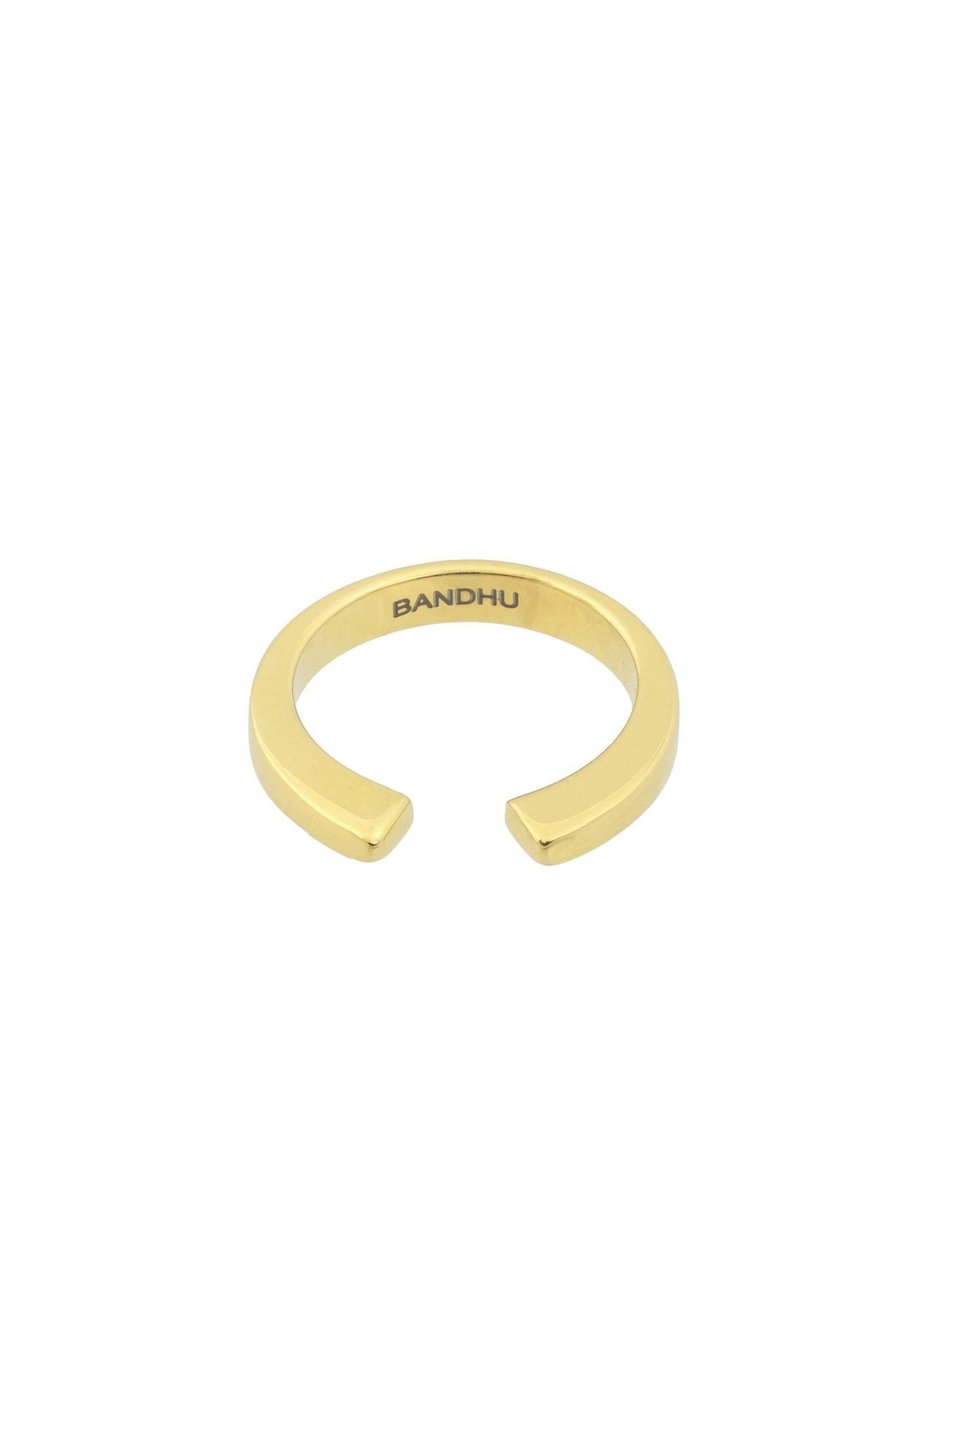 Bandhu Vinyasa Ring - Gold